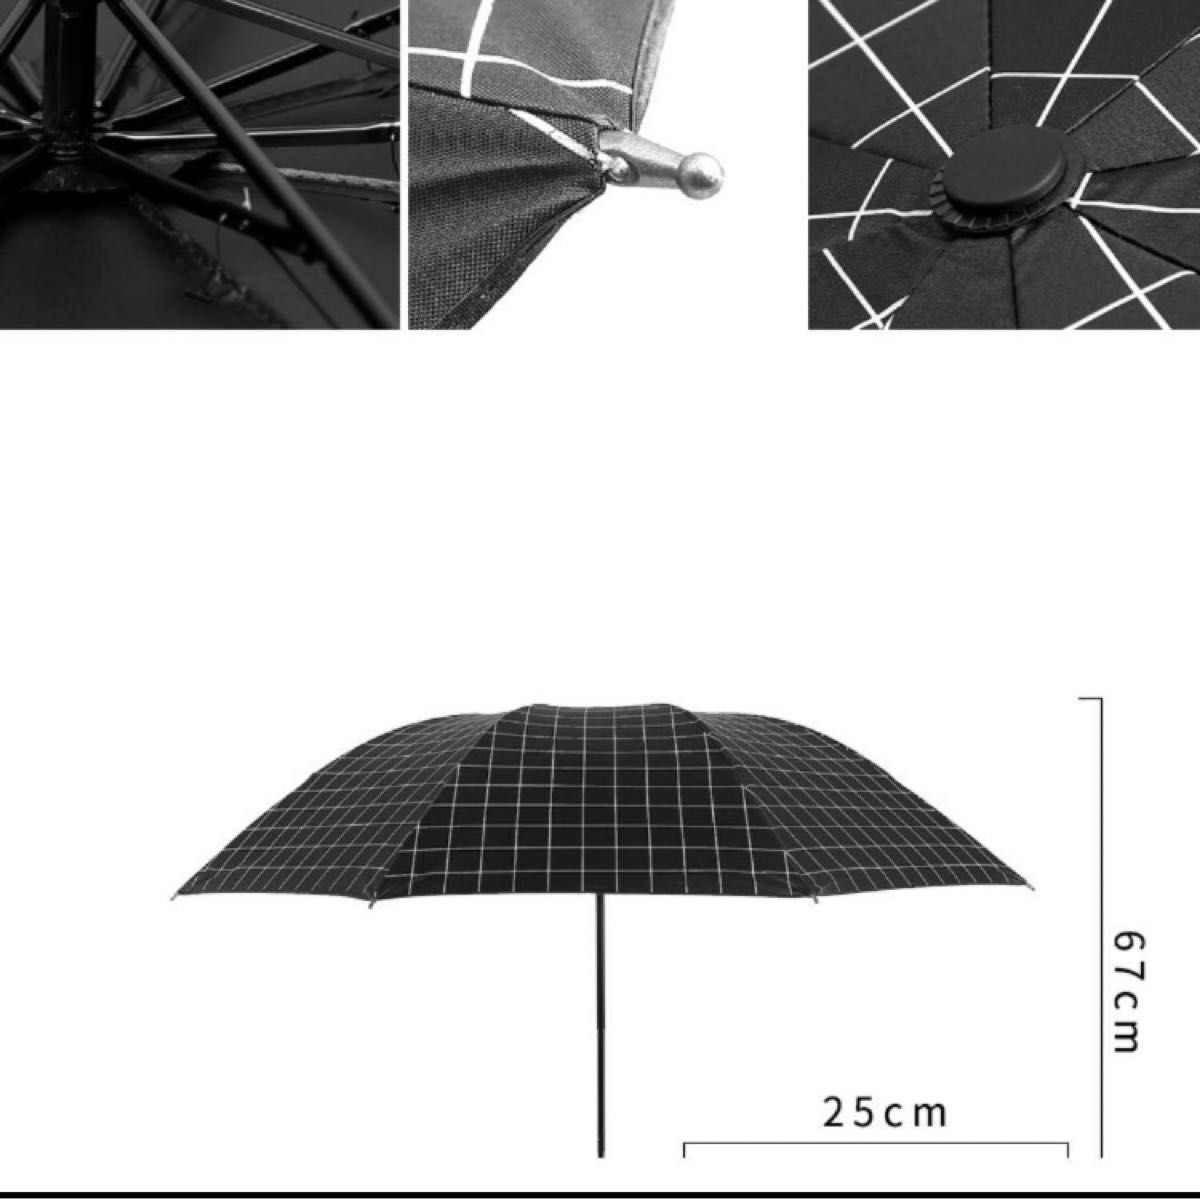 ストライプ 日傘 完全遮光 UVカット 晴雨兼用 折りたたみ傘 軽量 白 黒 遮光 撥水加工 紫外線対策 ピンク 水色 4色展開